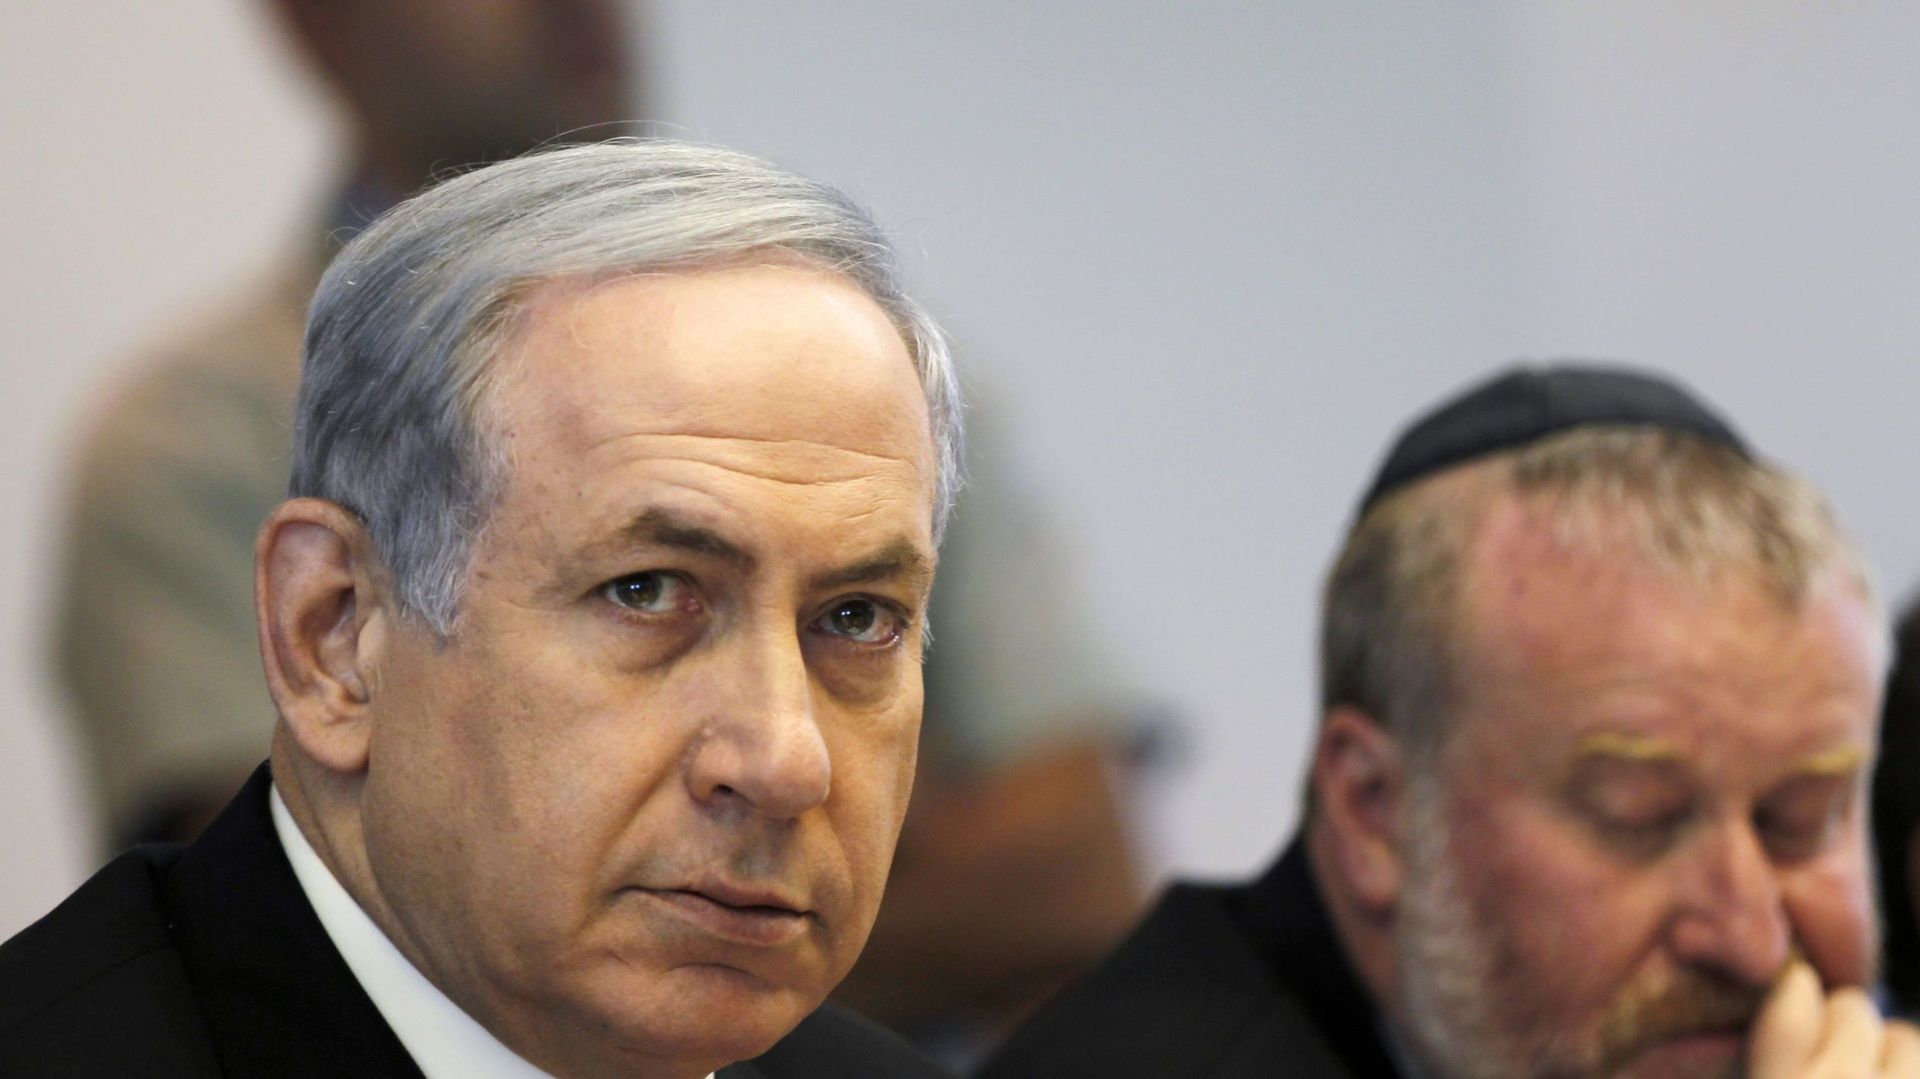 B. Netanyahu qui gouverne en coalition avec l'extrême droite, dit refuser qu'Israël soit "submergé" par des migrants syriens et africains.